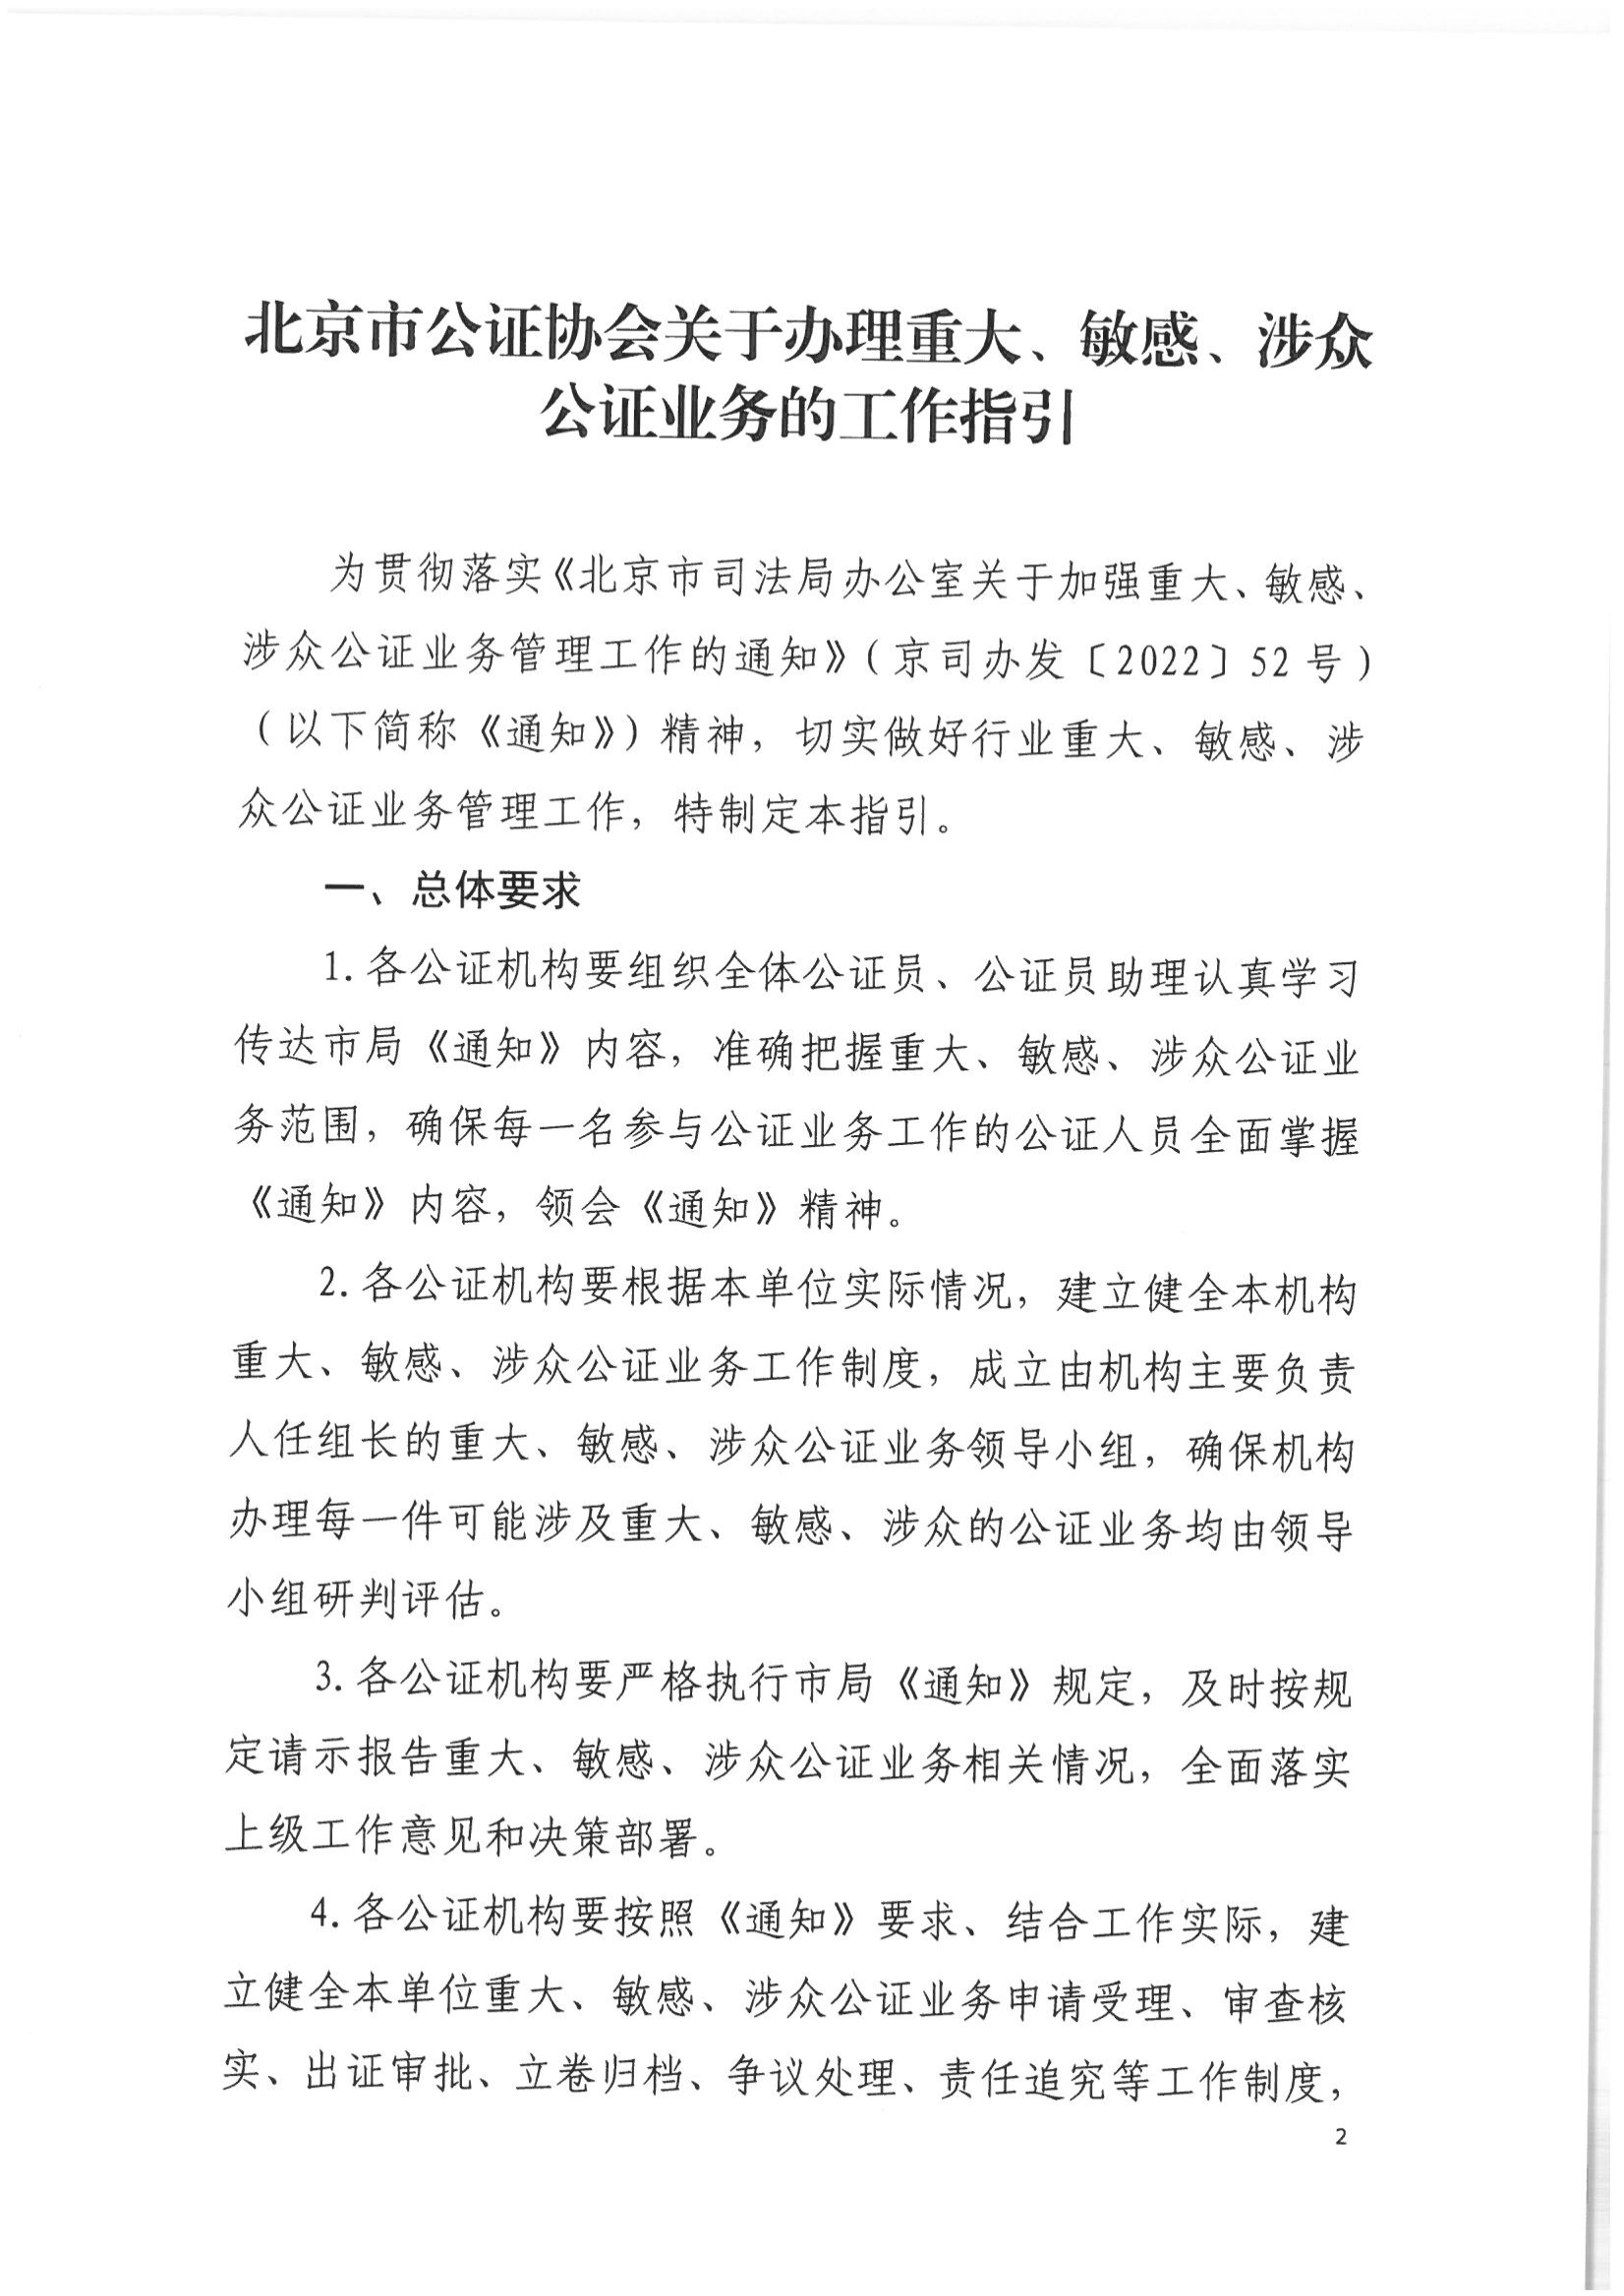 2北京市公证协会关于印发《北京市公证协会关于办理重大、敏感、涉众公证业务的工作指引》的通知(1)_01